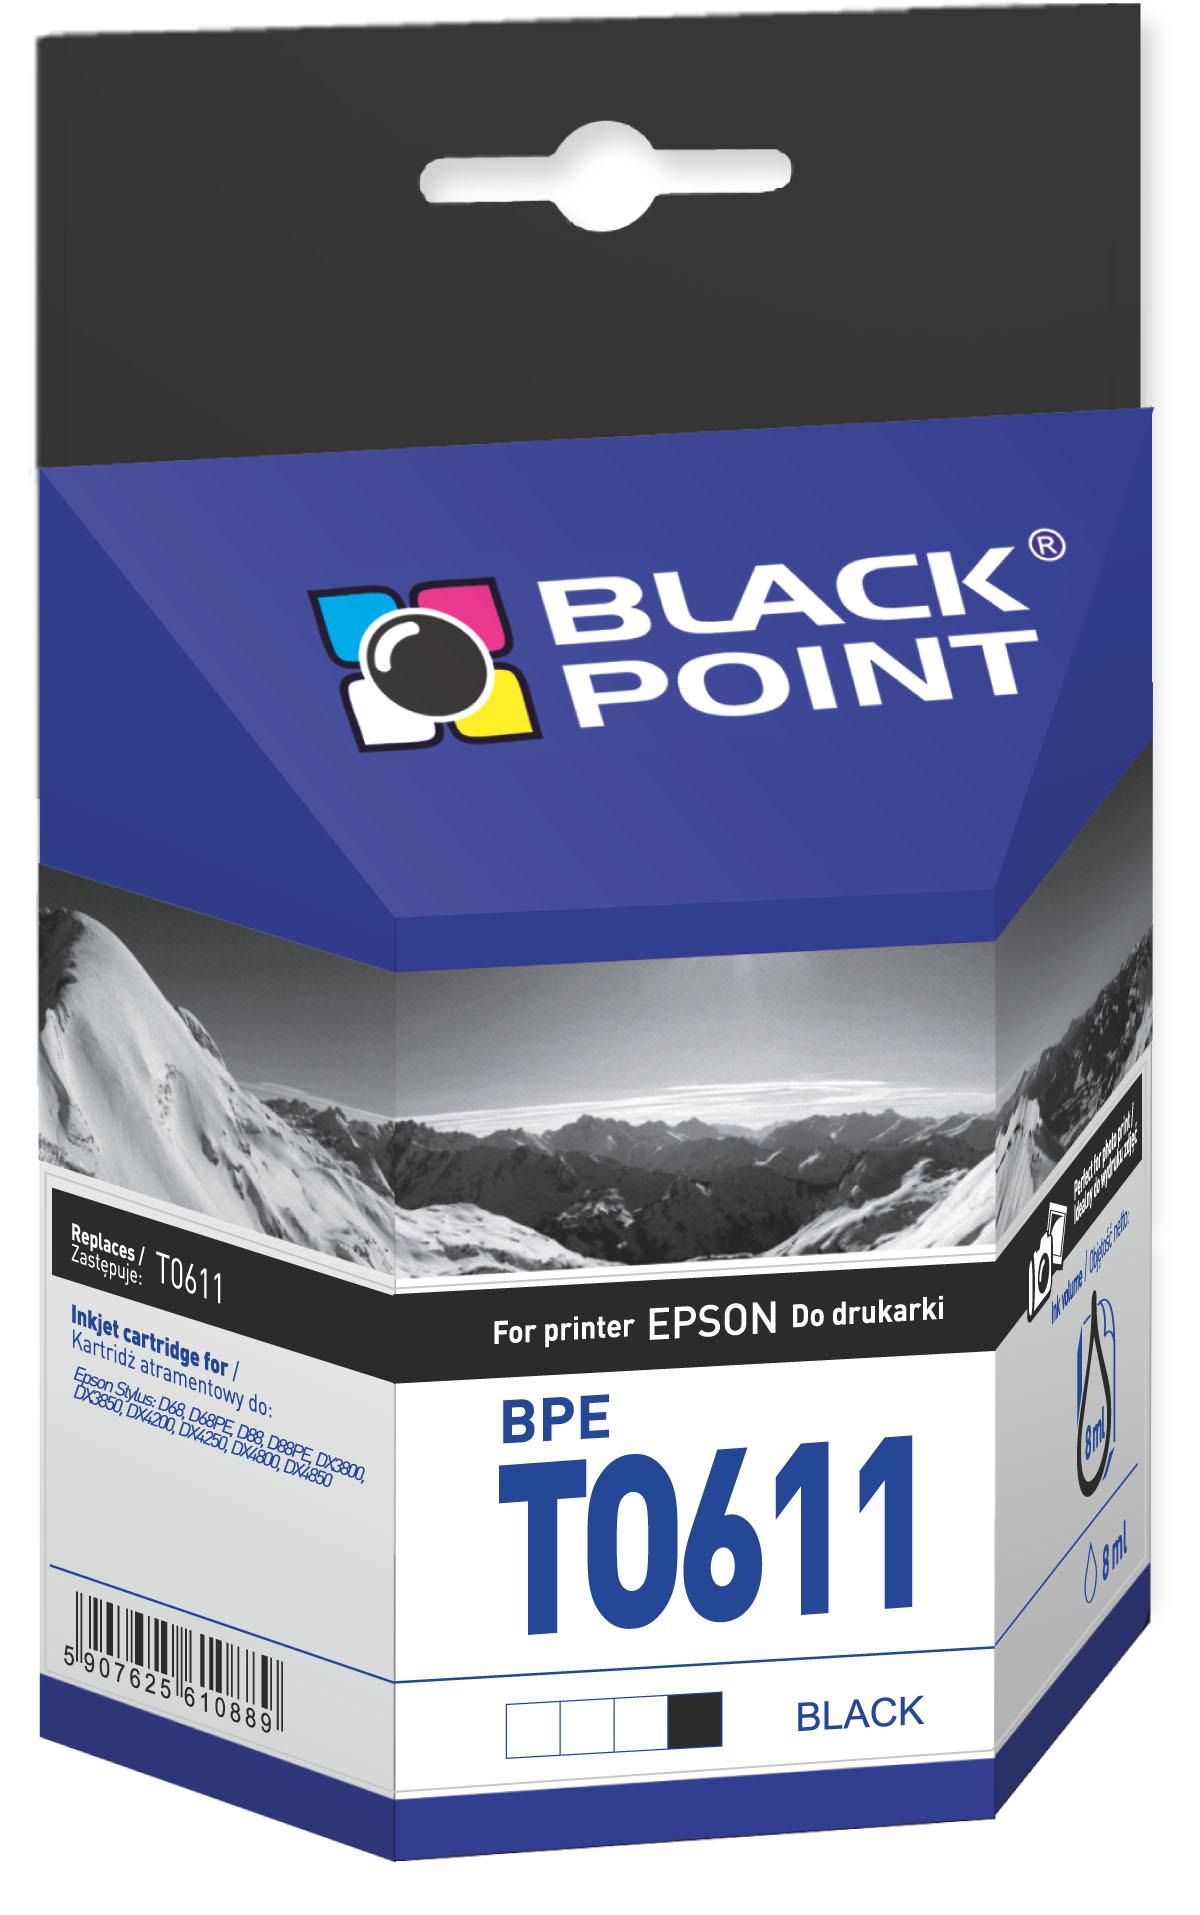 CMYK - Black Point tusz BPET0611 zastępuje Epson T0611, czarny